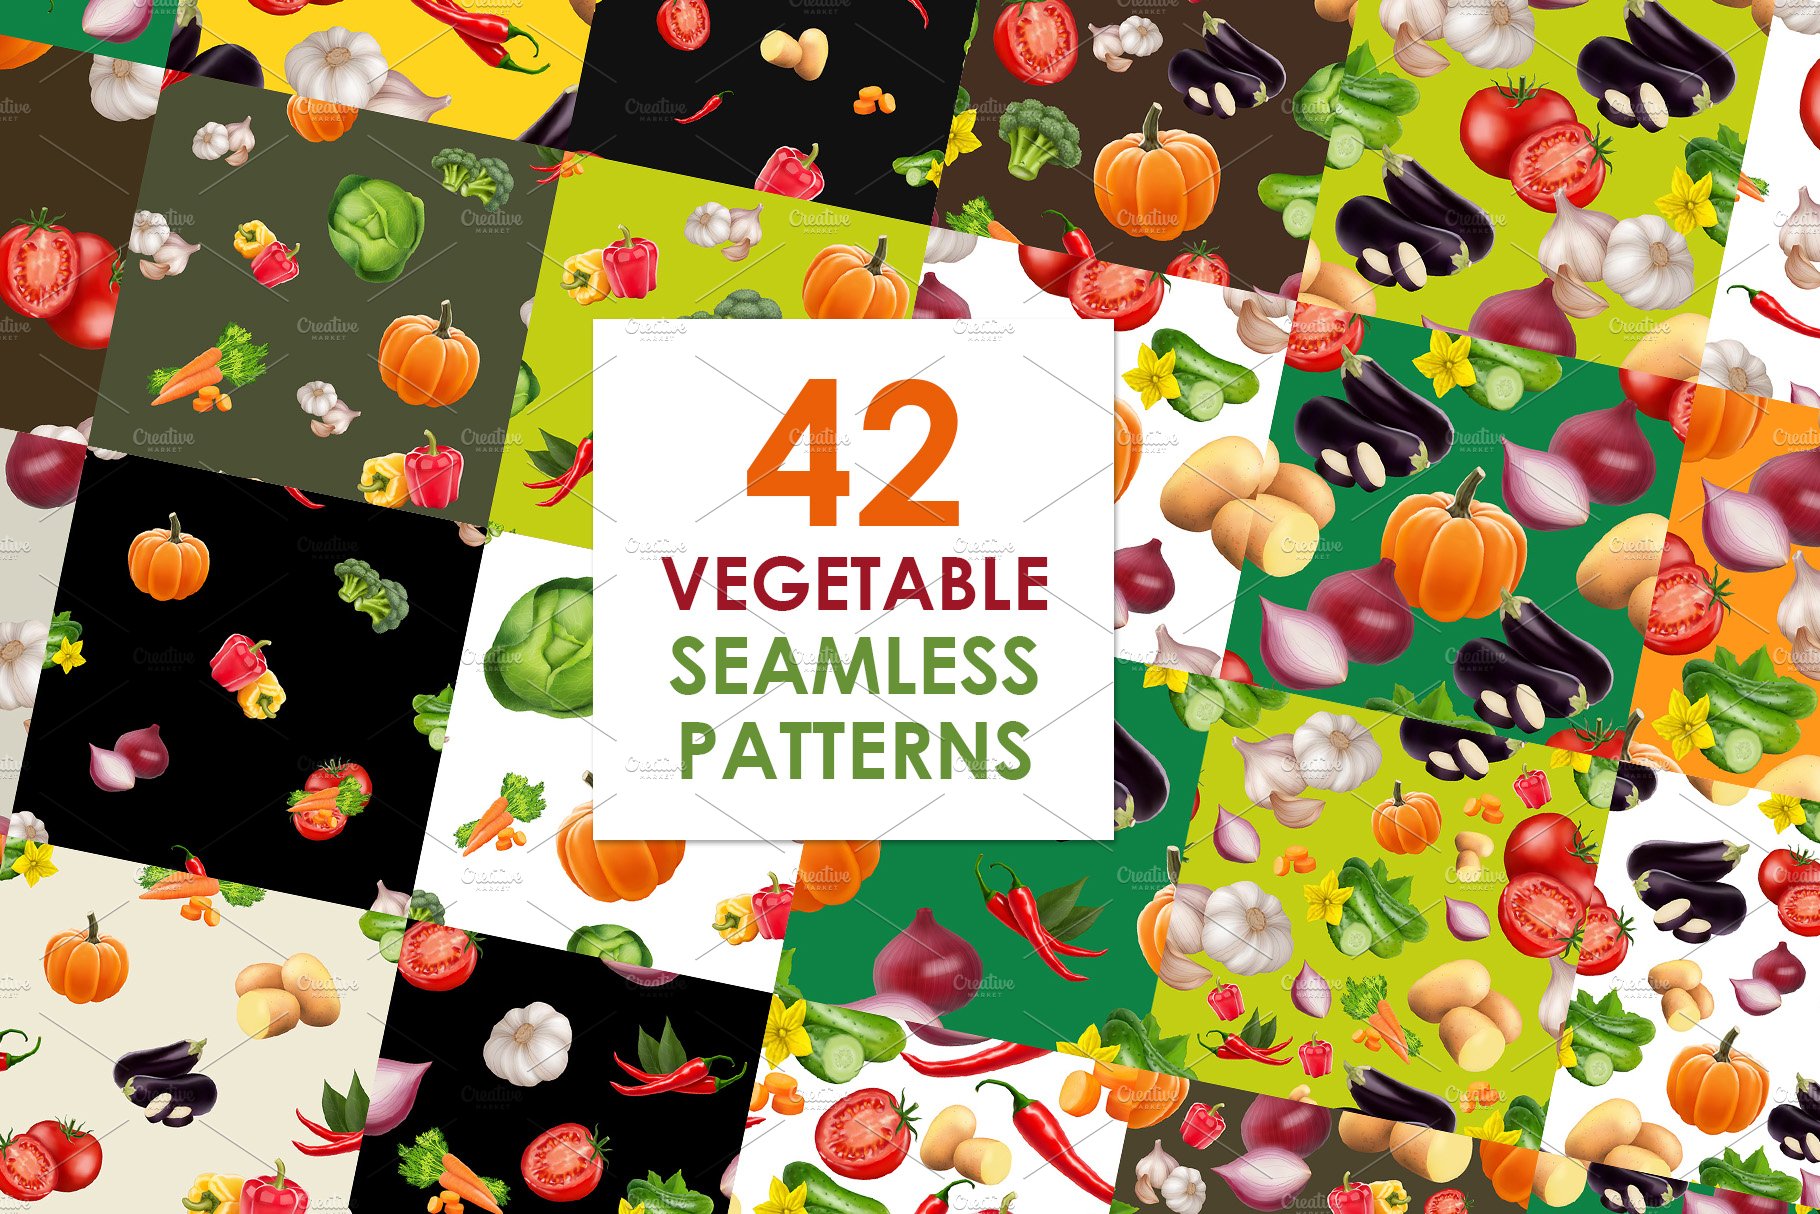 Big vegetables patterns set cover image.